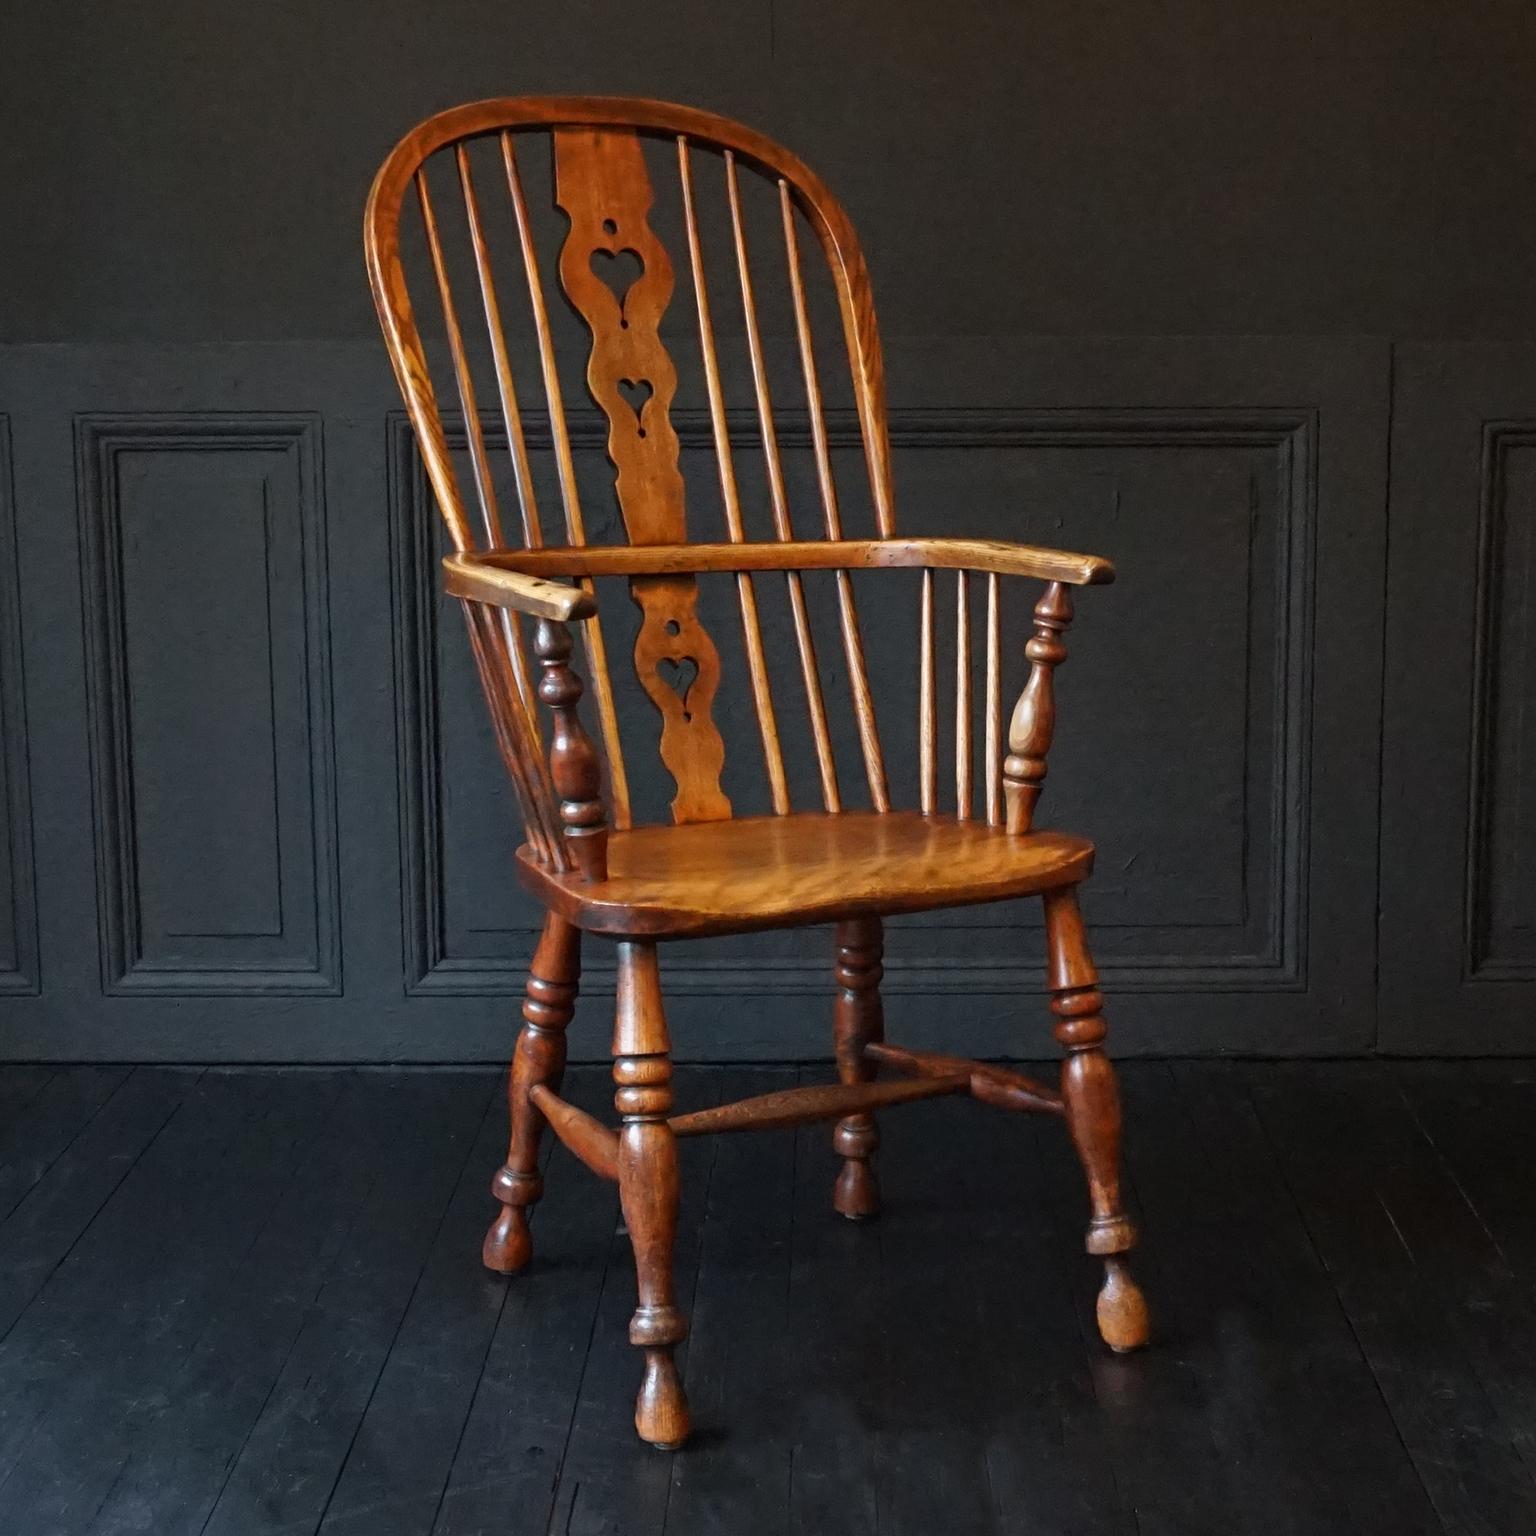 Une belle chaise Windsor de la fin de l'époque géorgienne et du début de l'époque victorienne, en if et orme, avec dossier en forme de peigne.
Le dossier central est percé de cœurs, les accoudoirs sont en forme de cerceaux, l'assise est étroite